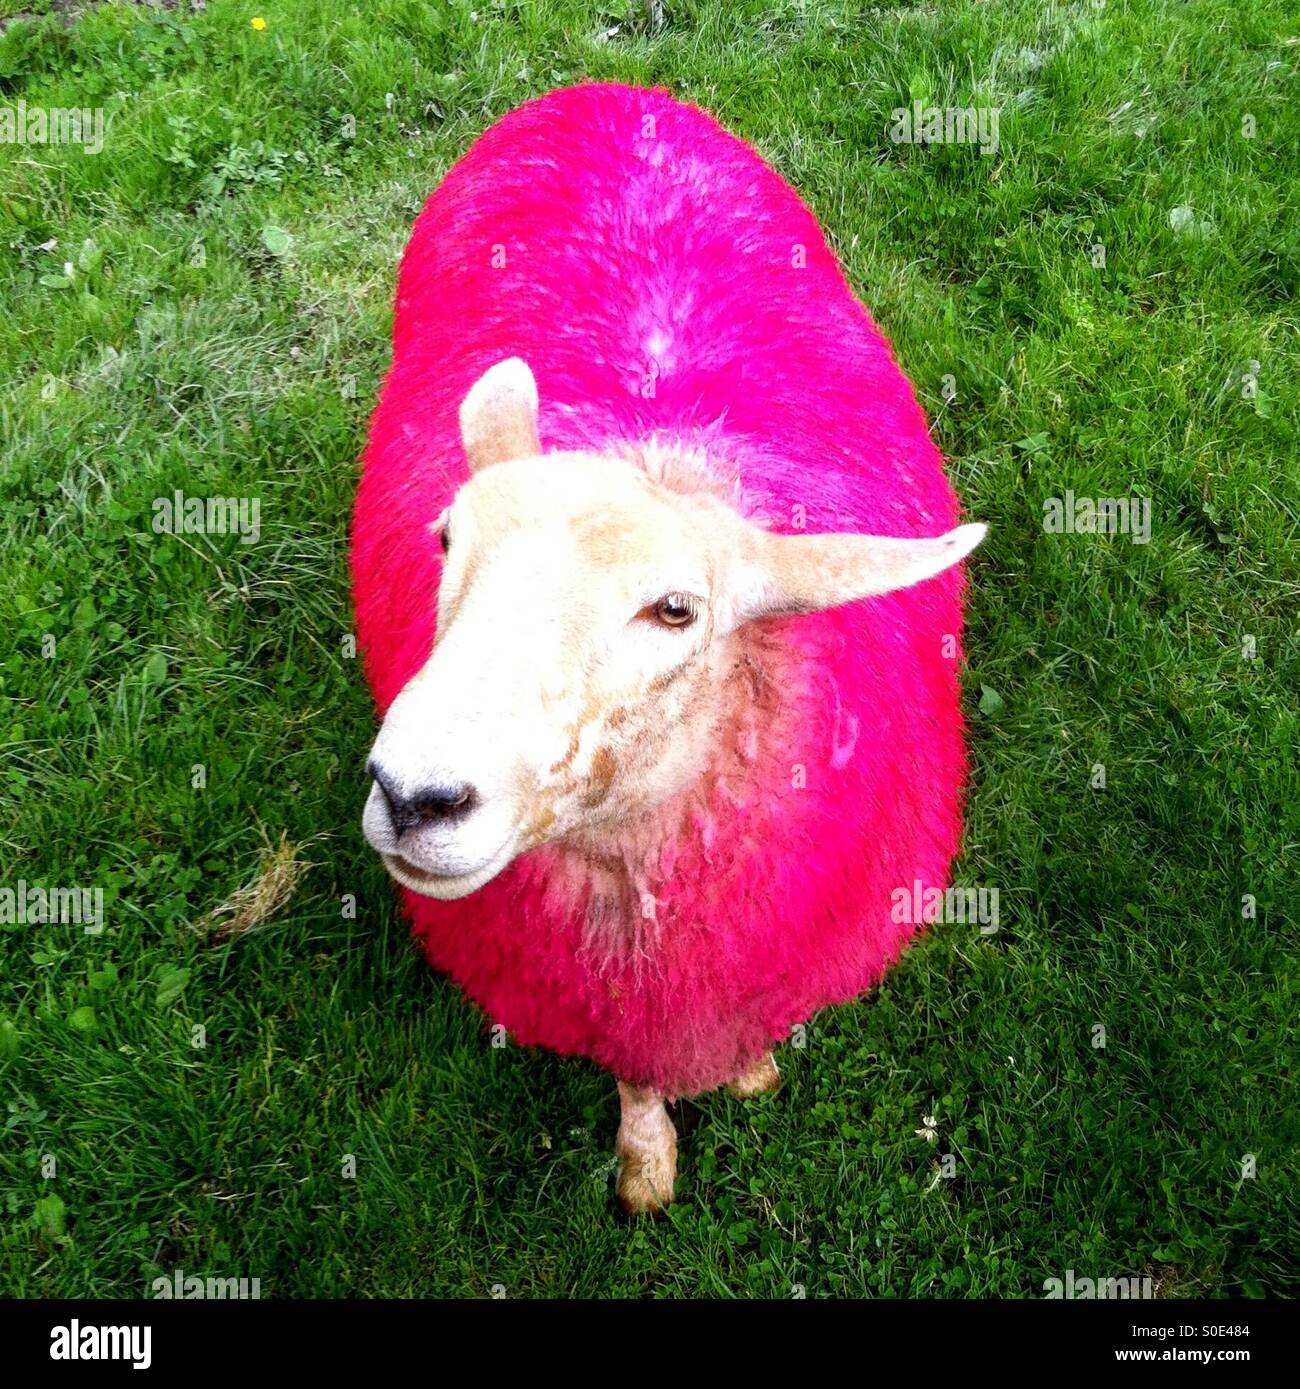 Regina, la oveja rosa, te saluda con una cálida sonrisa Foto de stock